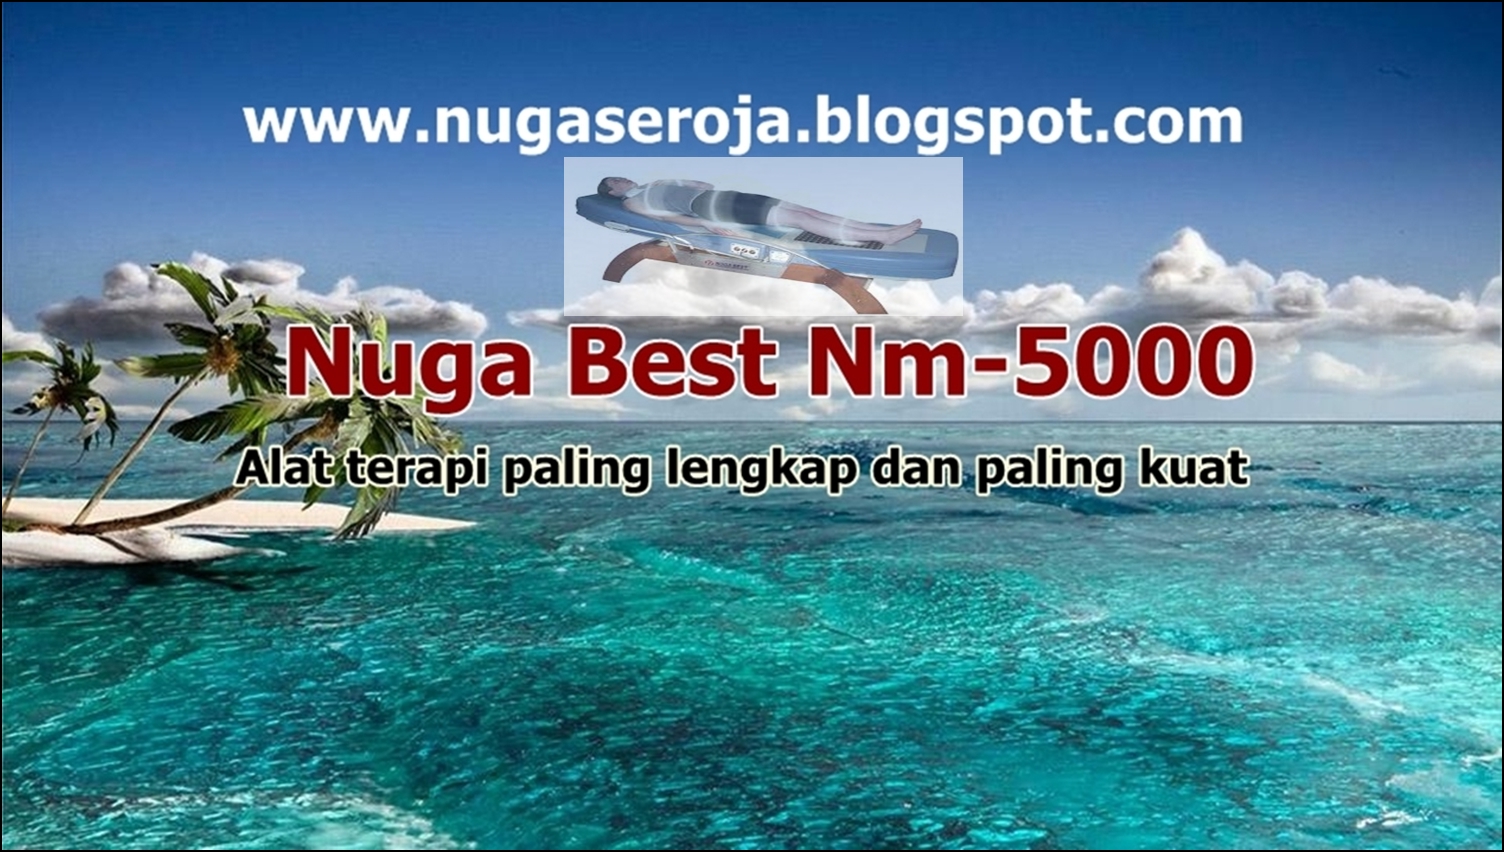 Nuga Best Nm5000 second